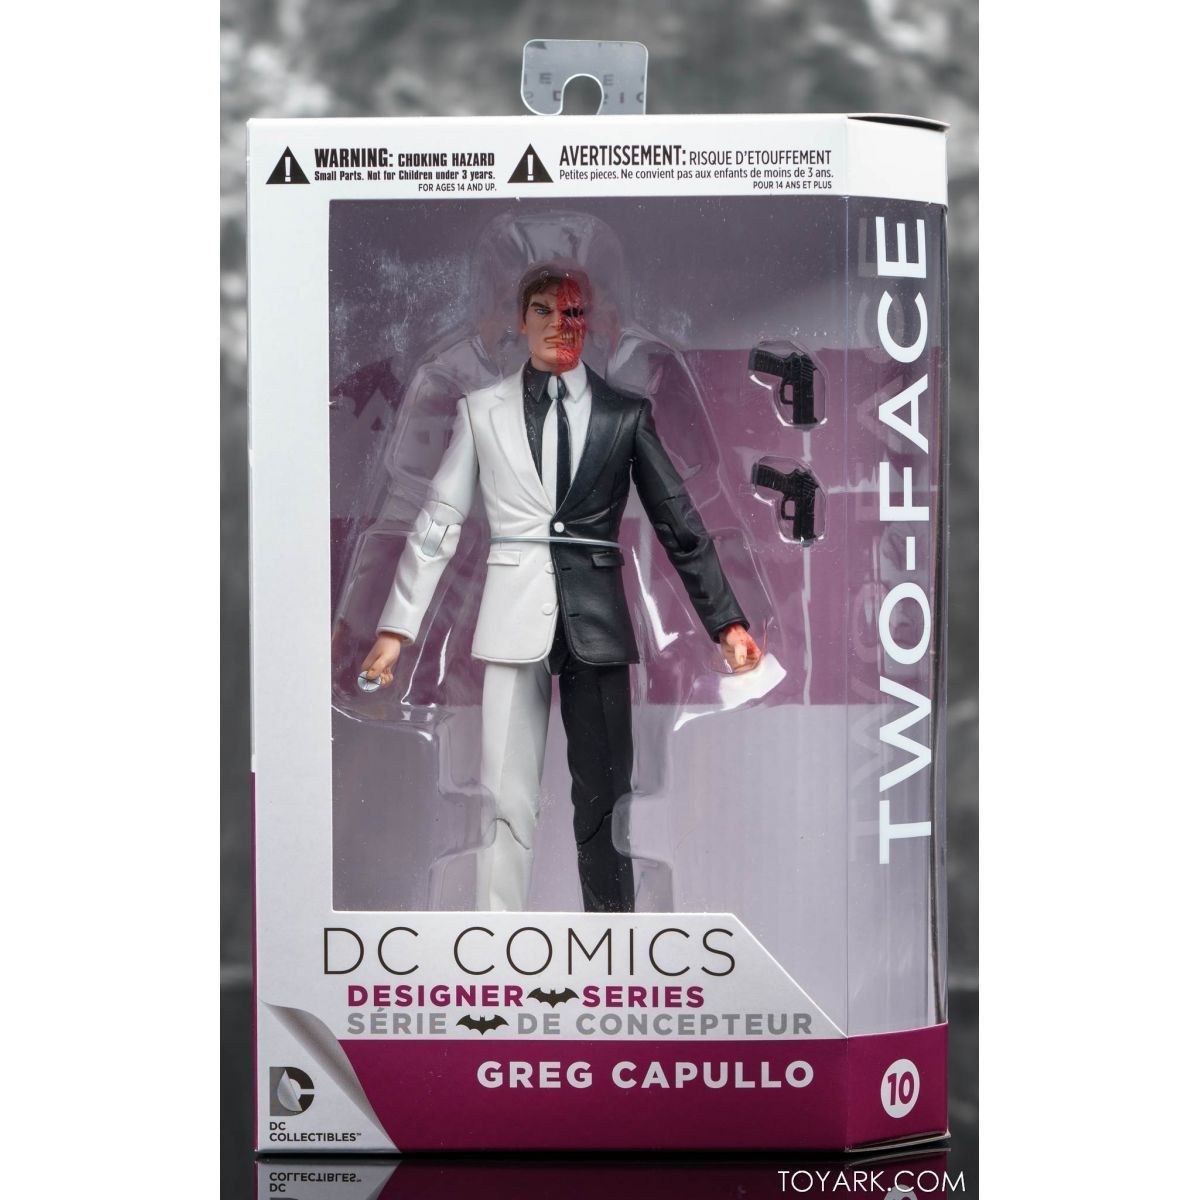 Boneco Duas-Caras (Two-Face): Batman: Zero Year Series 3 (by Greg Capullo) Escala 1/10 - DC Collectibles